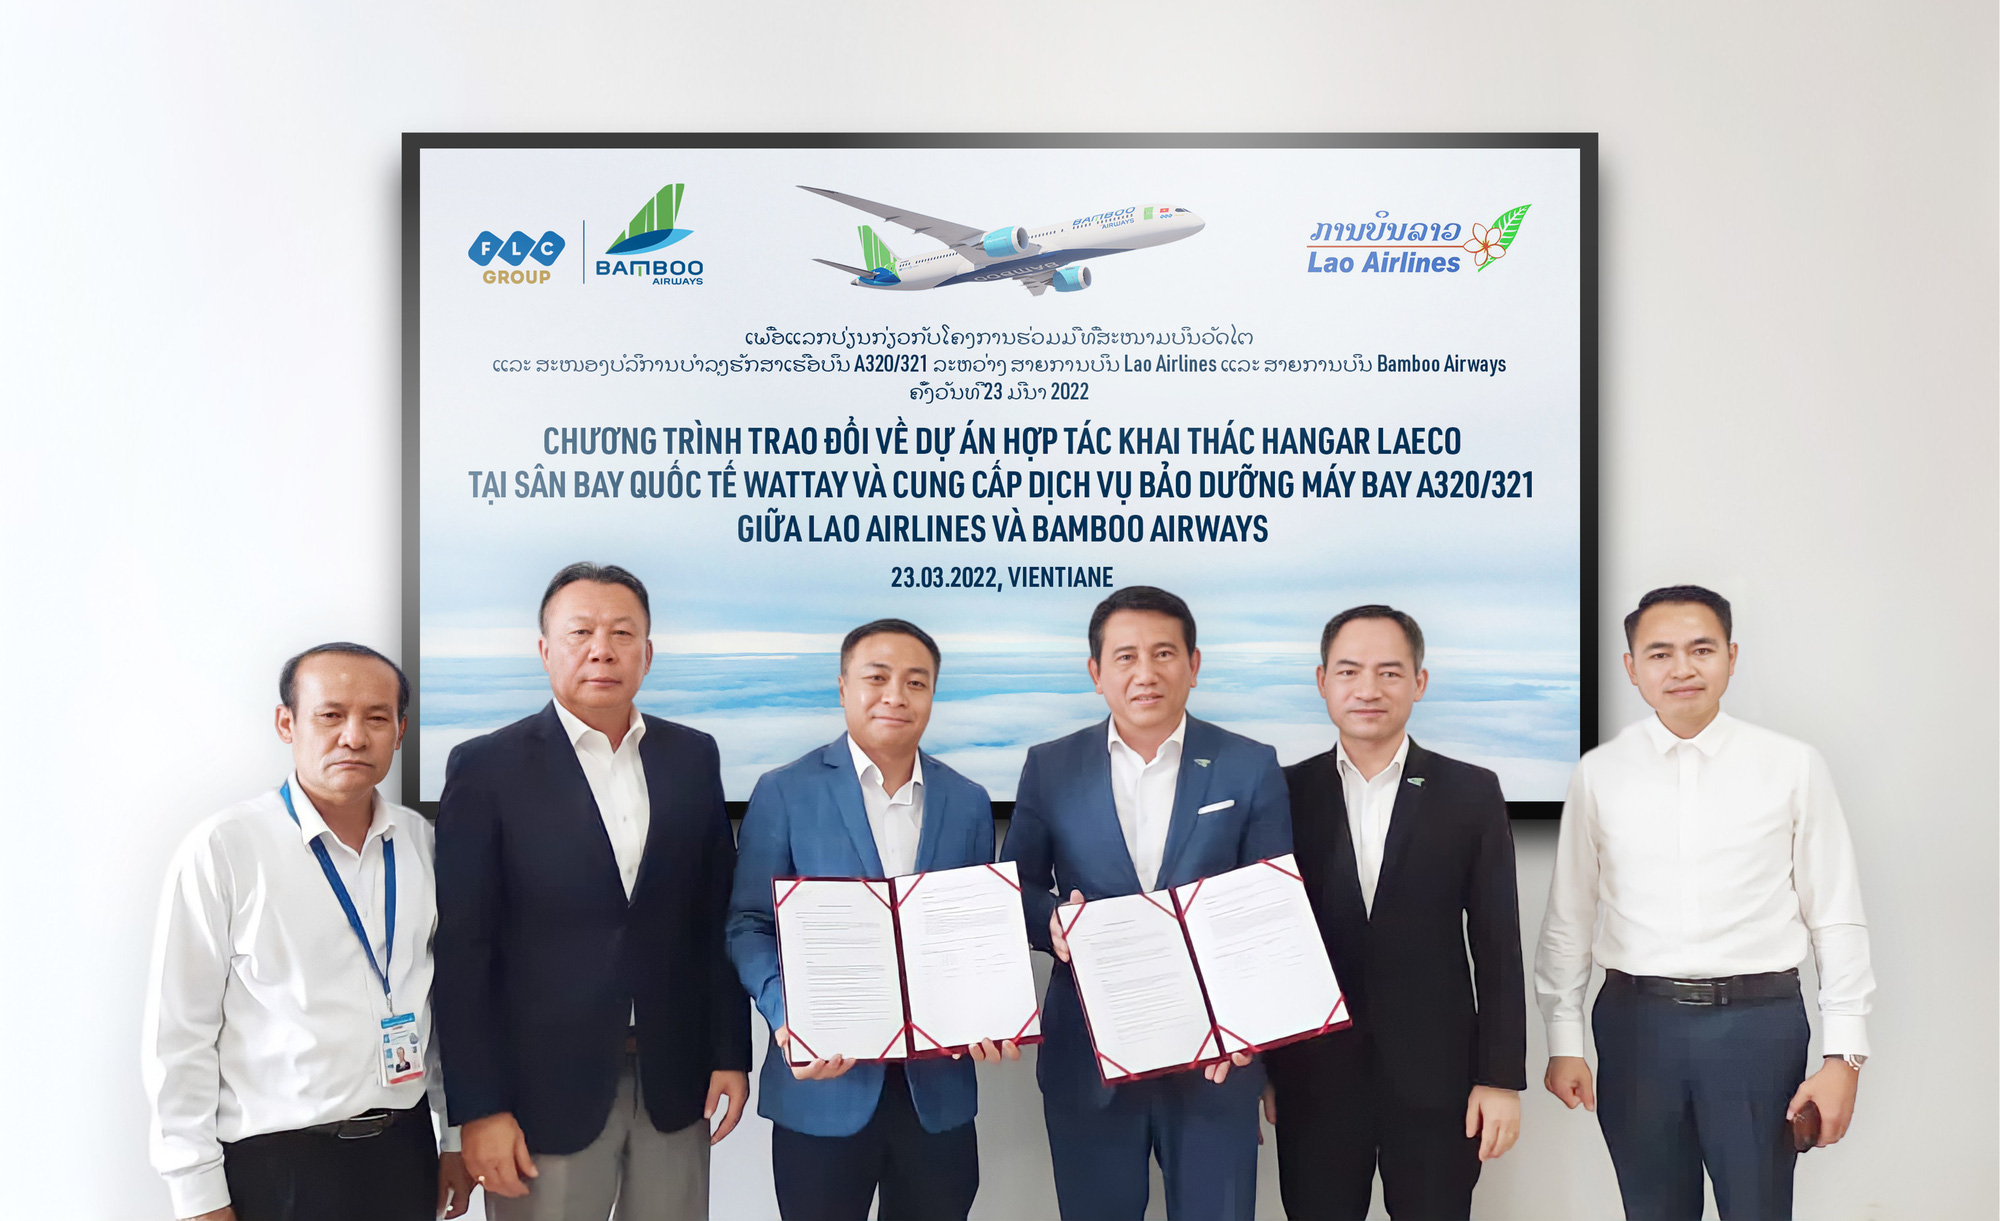 Bamboo Airways ký kết hợp tác khai thác hangar và bảo dưỡng máy bay với Lao Airlines - Ảnh 1.